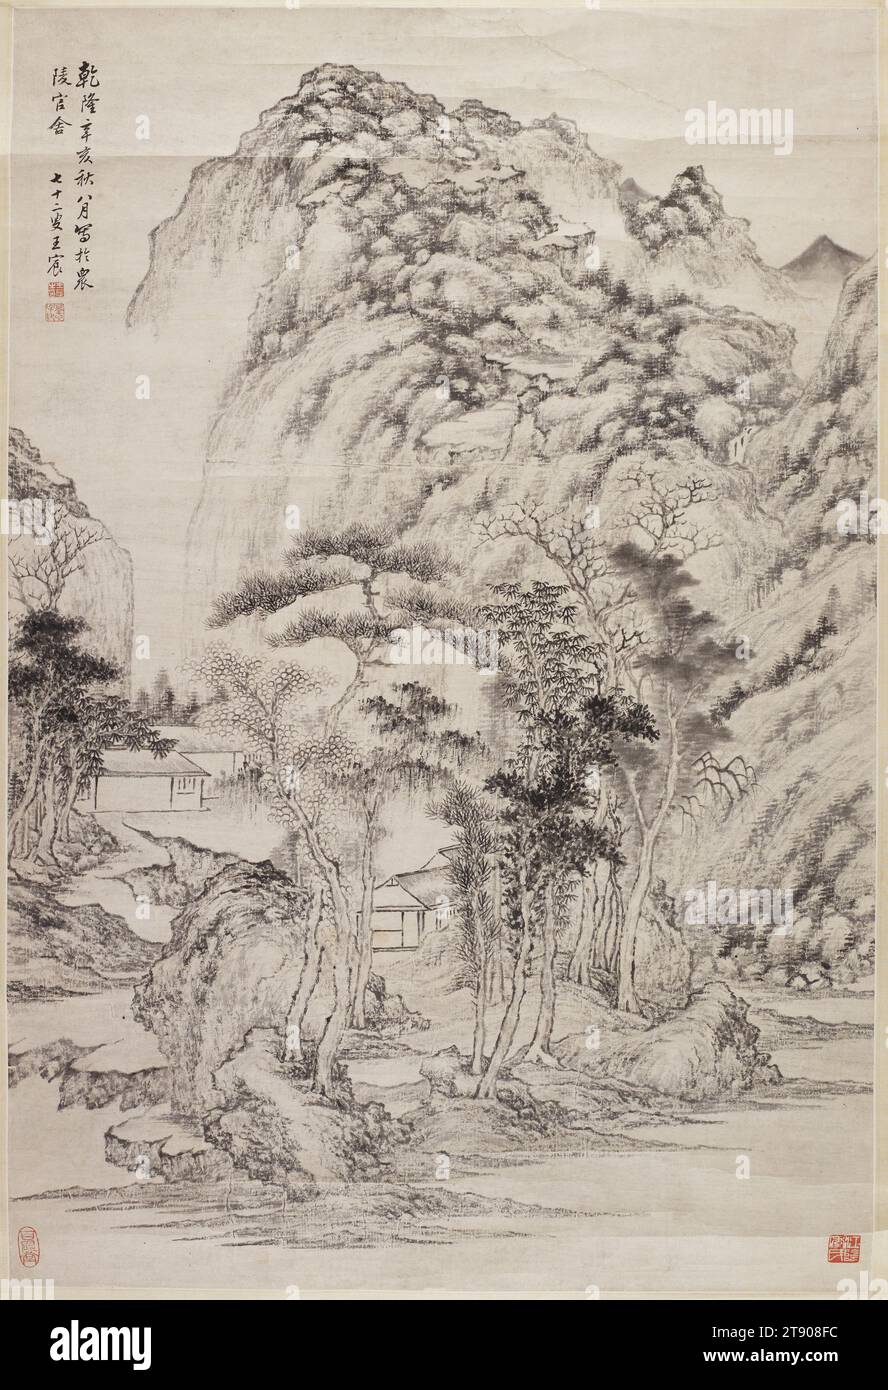 Paesaggio alla maniera ortodossa, 1791, Wang Chen, 1720 - 1797, 33 13/16 x 22 13/16" (85,88 x 57,94 cm) (immagine)39 3/4 x 28 5/8" (100,97 x 72,71 cm) (supporto), inchiostro su carta, Cina, XVIII secolo, l'iscrizione in alto a sinistra di questo paesaggio di inchiostro ortodosso recita, dipinta nella residenza ufficiale di Zhengling nell'ottavo mese dell'autunno dell'anno Xin hai del regno Qianlong (1791). Firmato: Il settantadue anni Wang Chen. Ci sono due sigilli d'artista e due sigilli da collezione che identificano la famiglia li di Jiang Yin nella provincia di Jiangsu Foto Stock